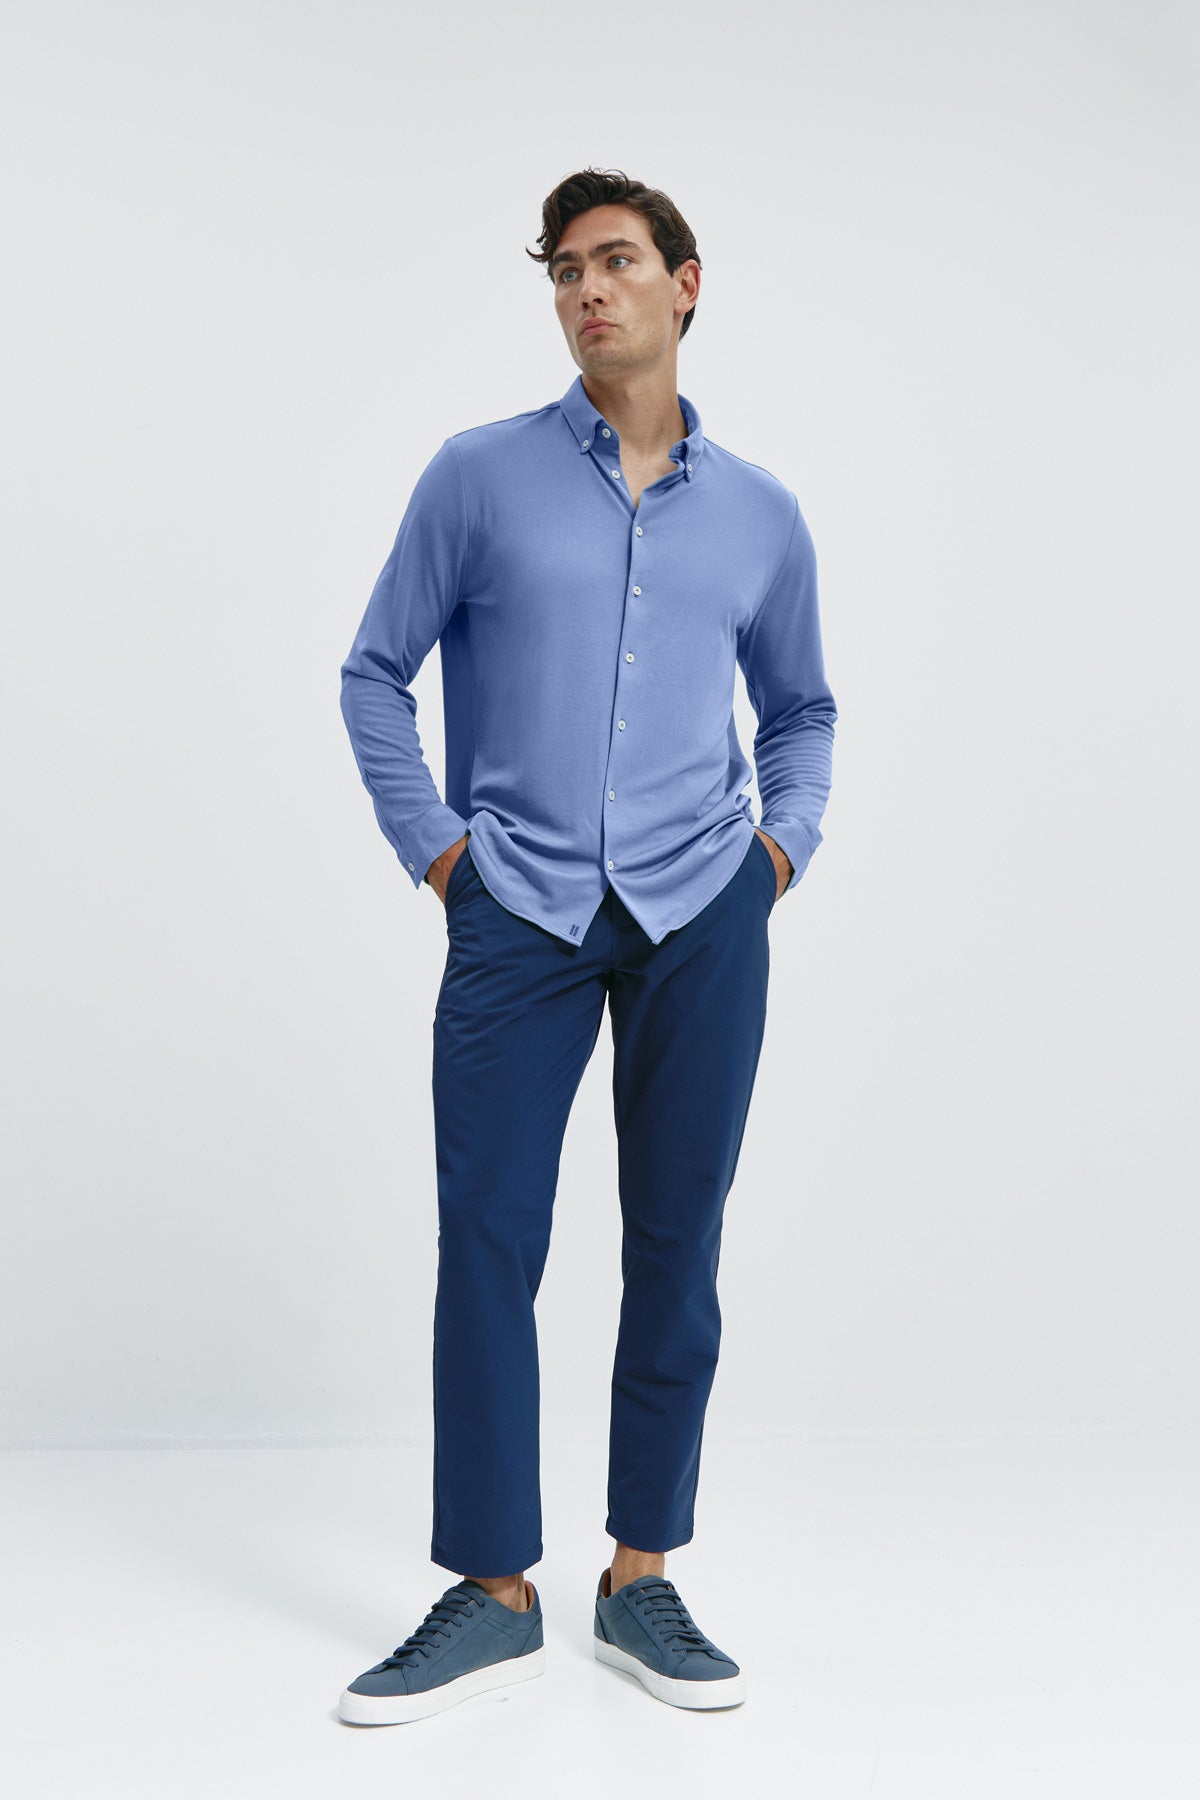 Camisa casual Azul acero para hombre sin arrugas ni manchas. Manga larga, antiarrugas y antimanchas. Foto cuerpo entero